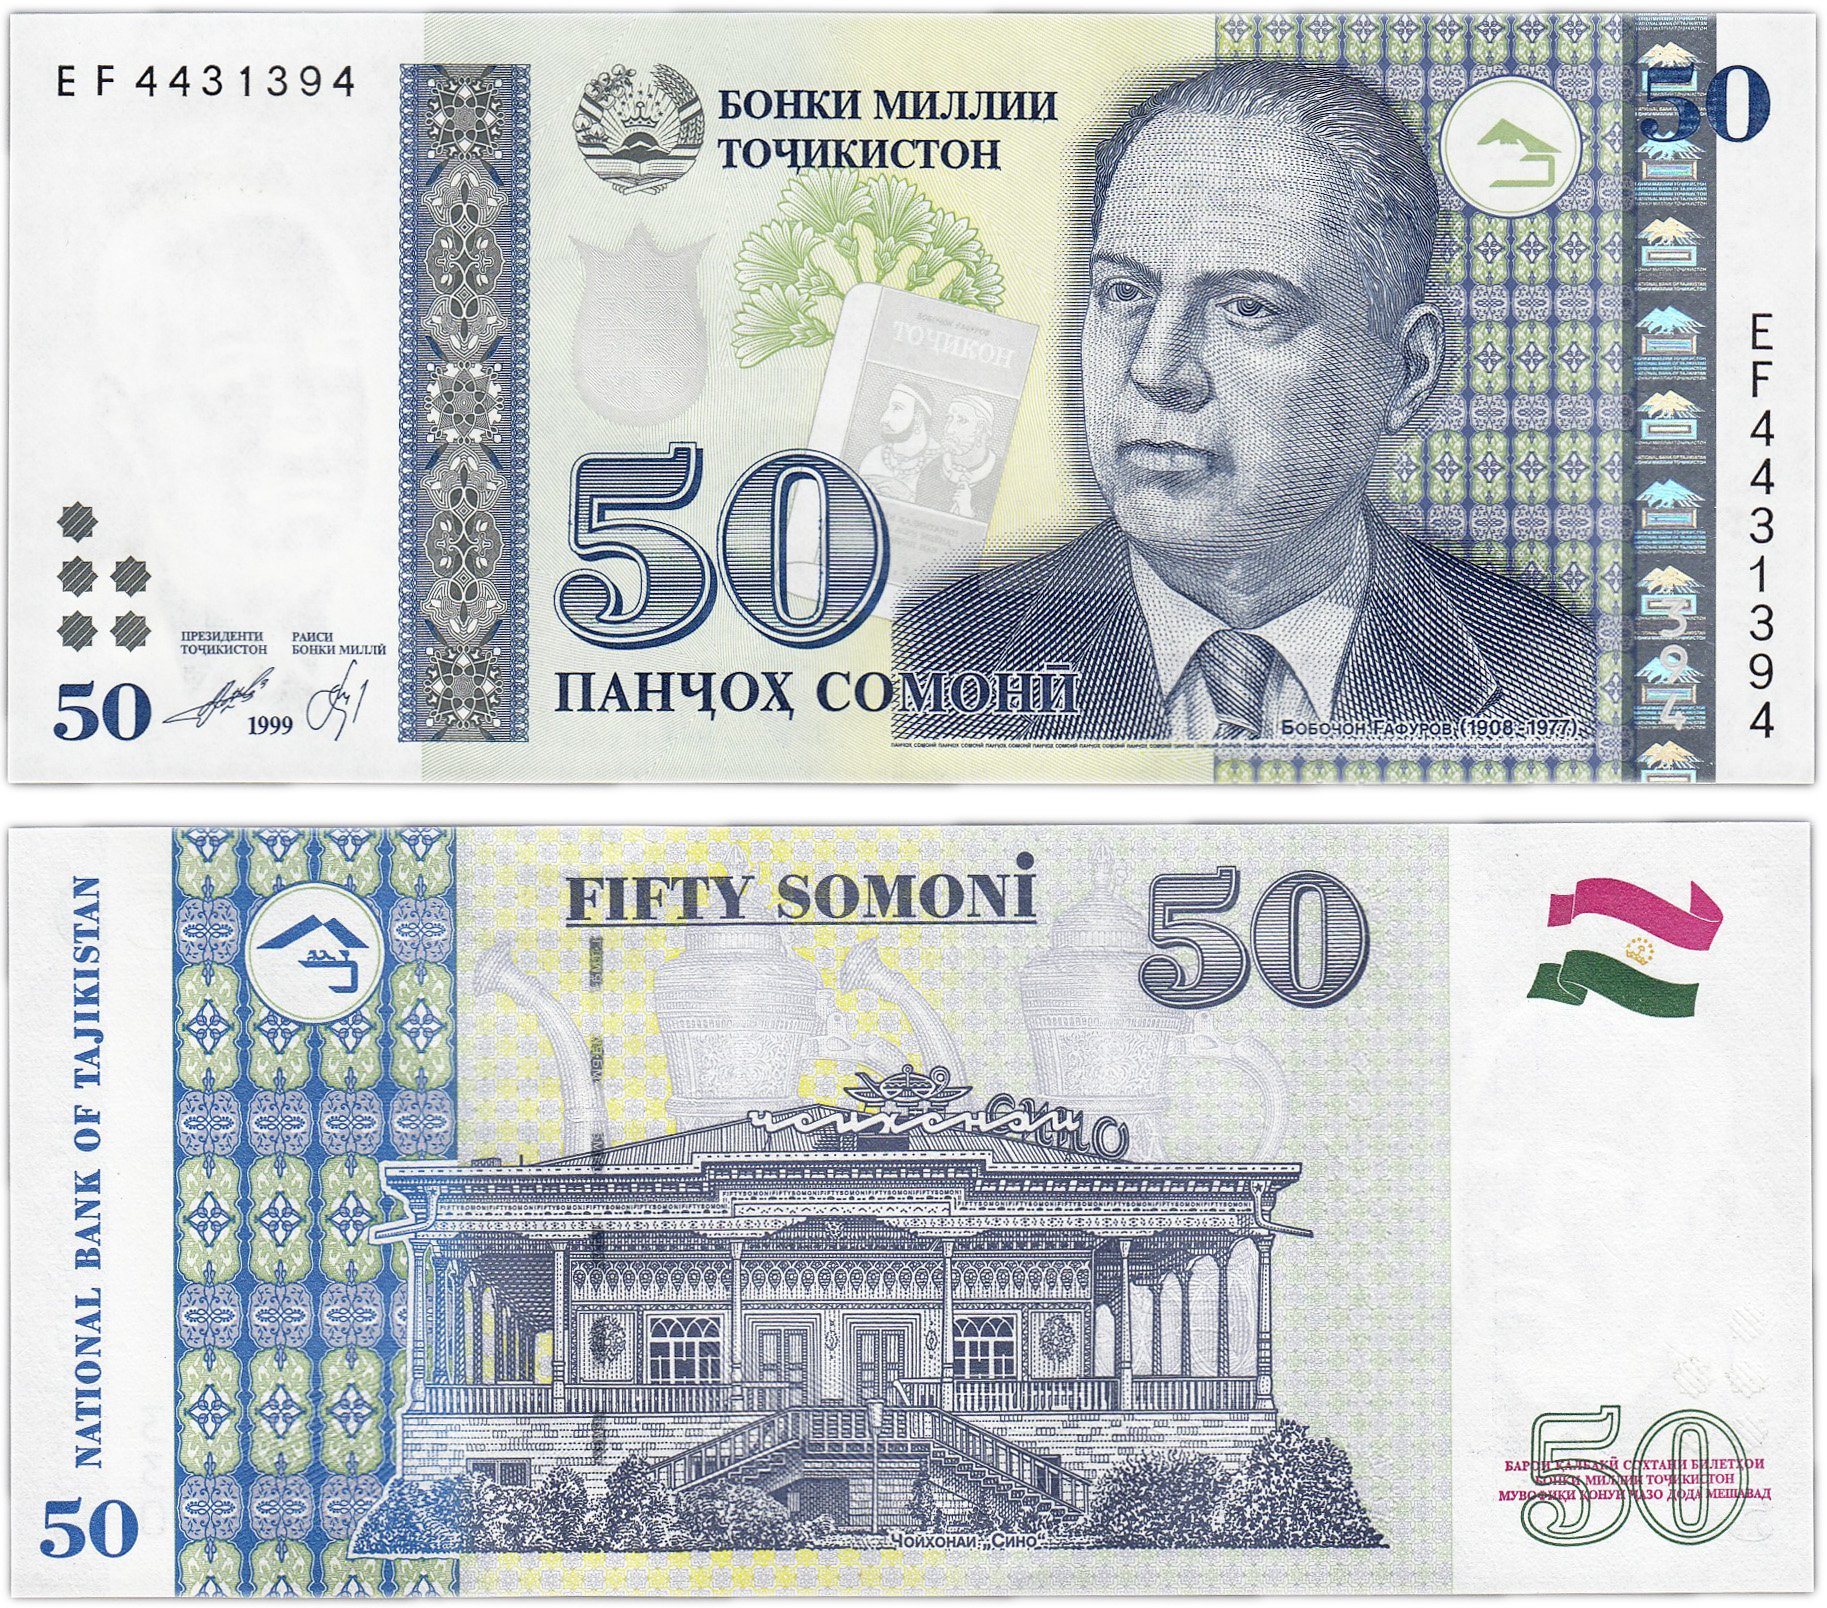 500 сомони в рублях на сегодня. 100 Сомони 1999. Таджикский купюры 500 Сомони. Таджикистан банкнота 20 Сомони 1999. Деньги Таджикистана 500 Сомони.